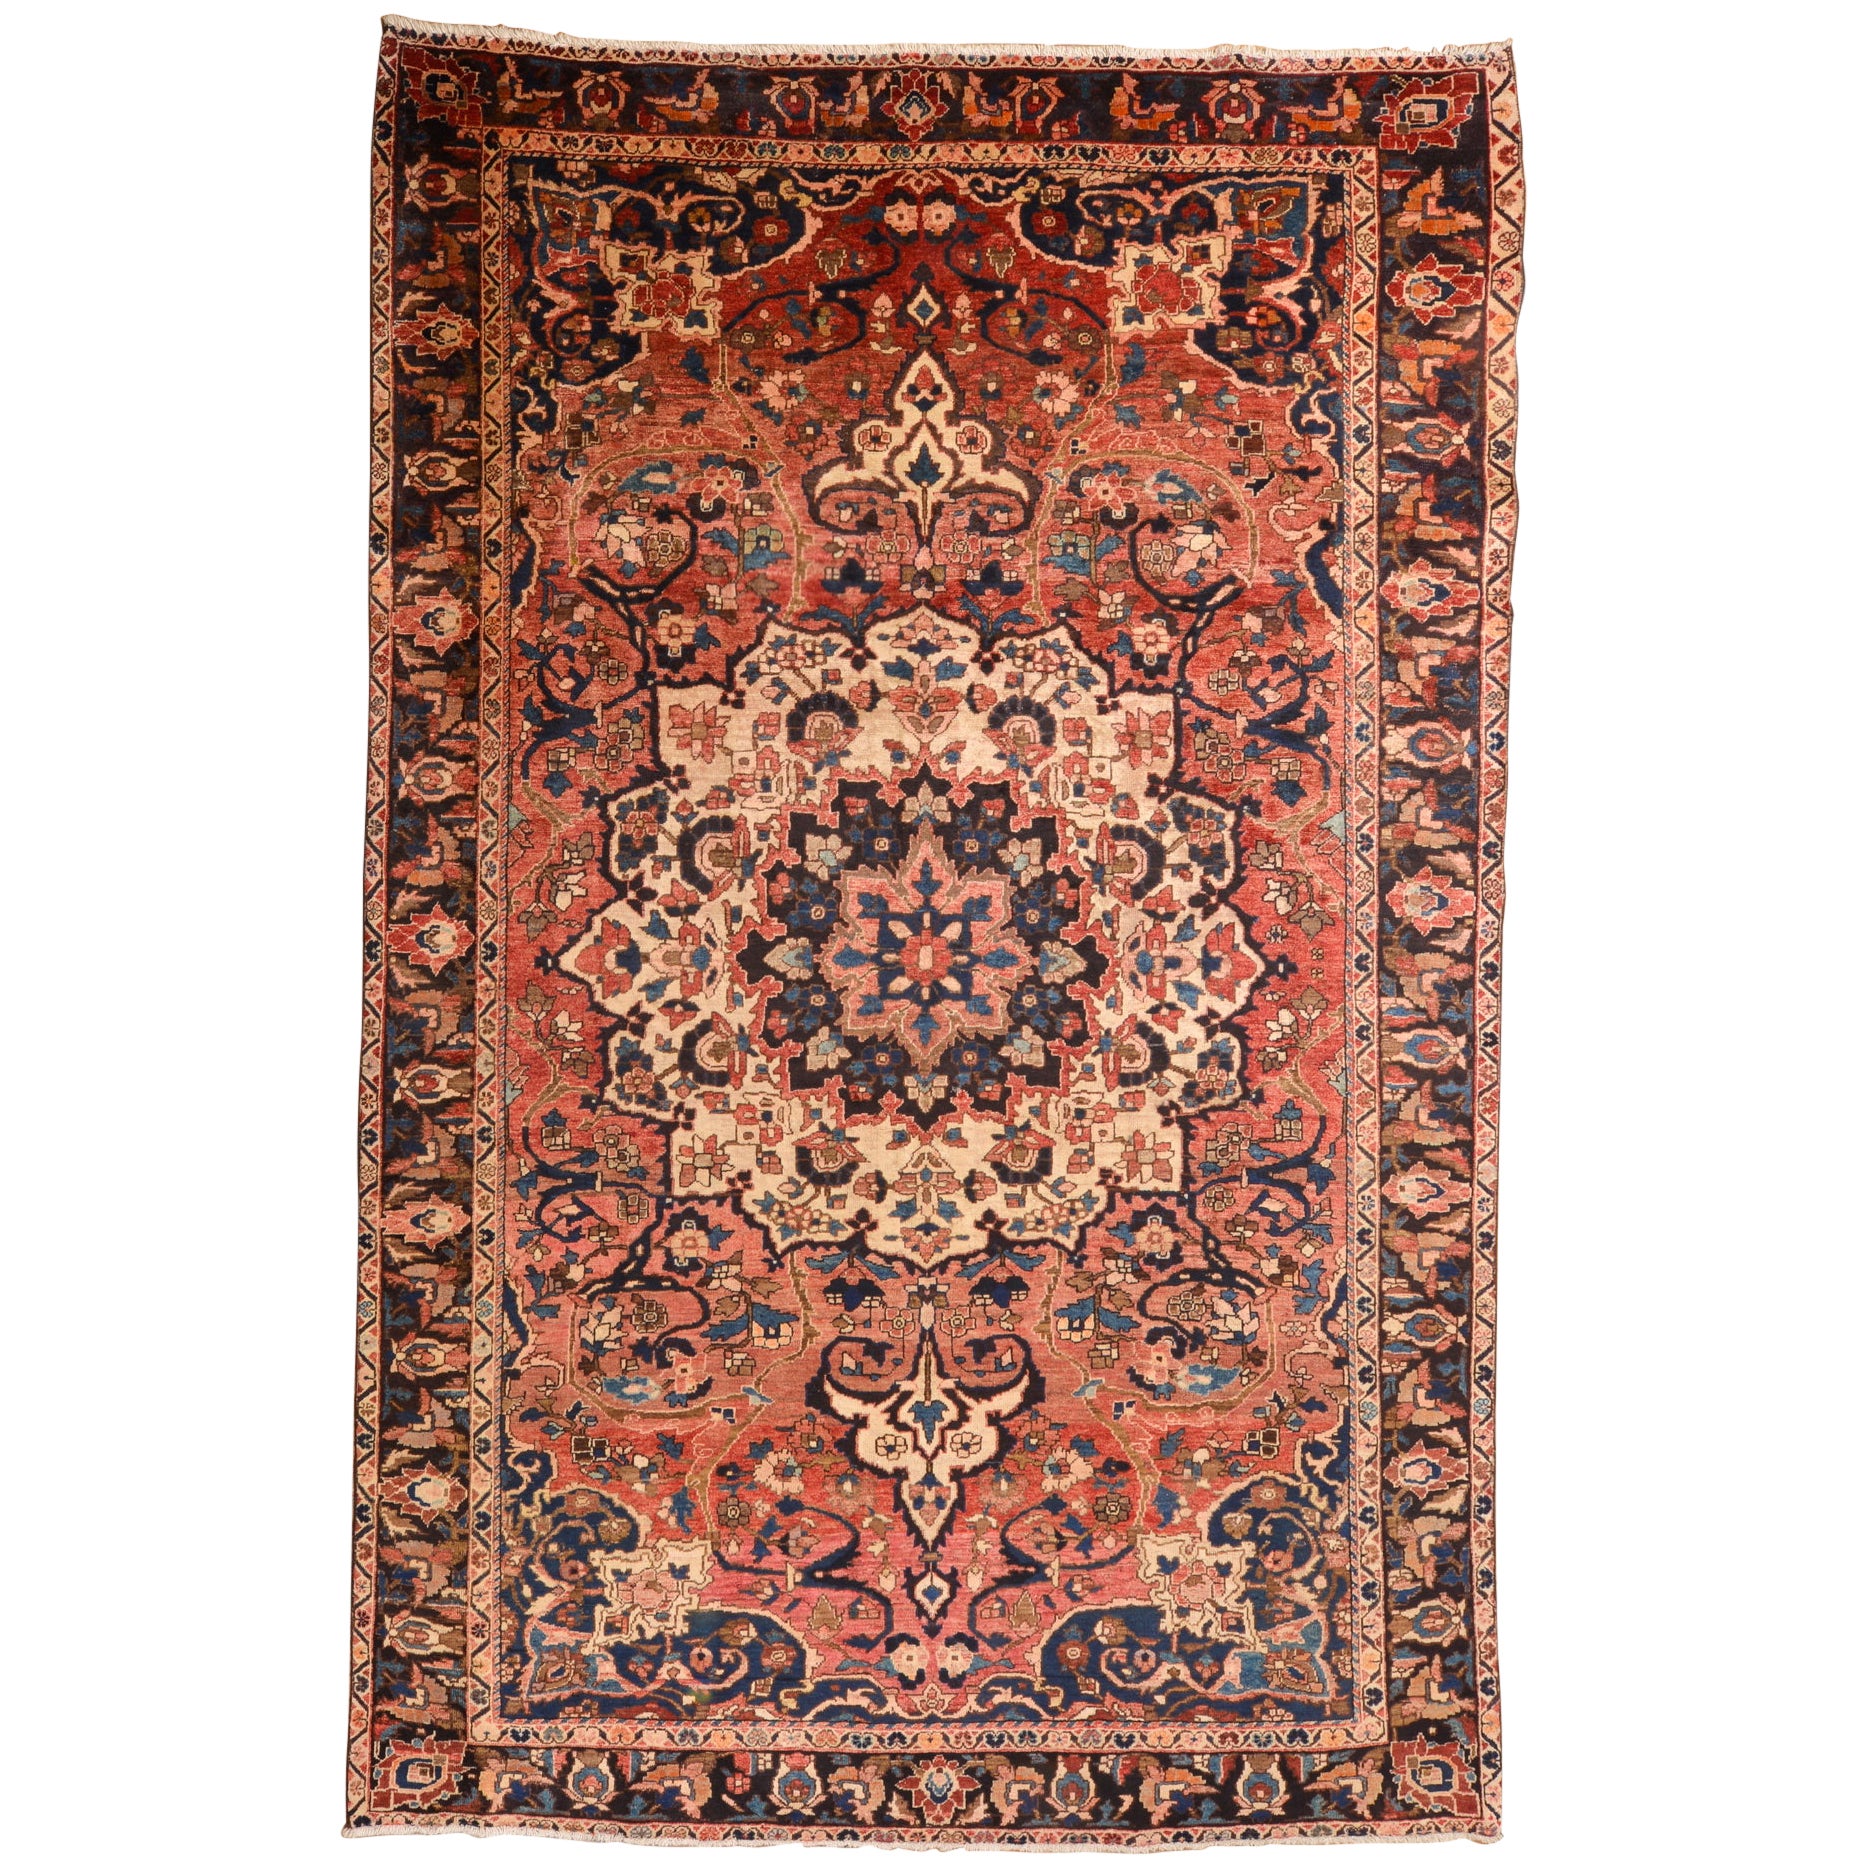 Großer armenischer Teppich mit klassischem Design